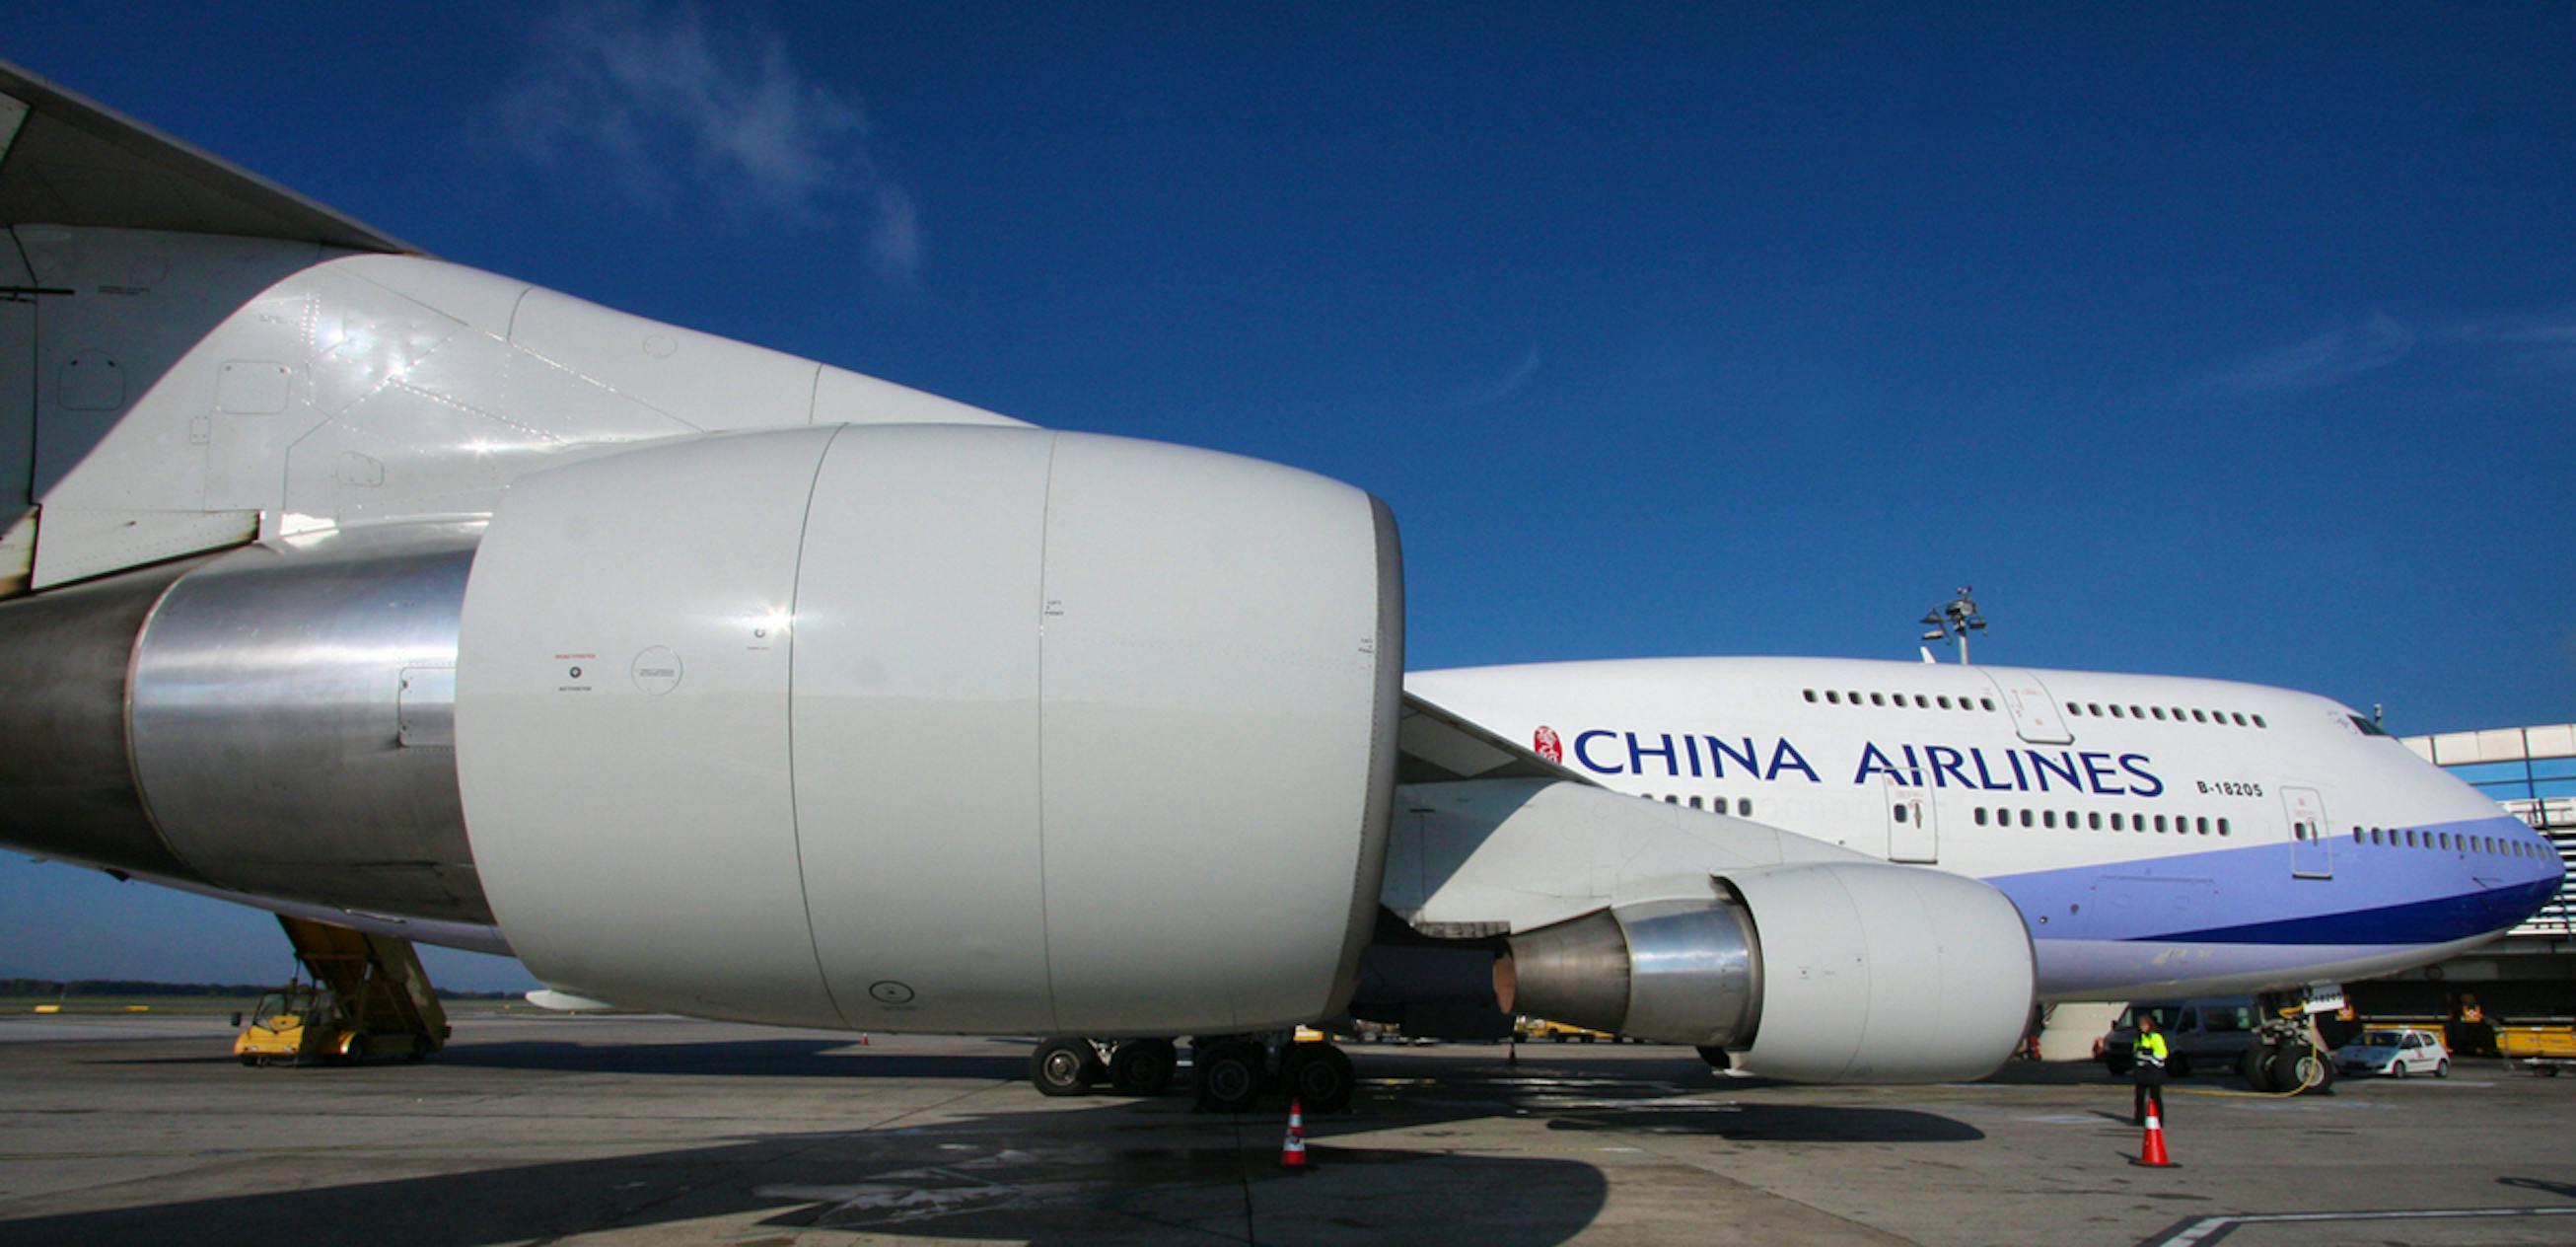 Letzter Flug mit Passagieren: China Airlines verabschiedet Boeing 747